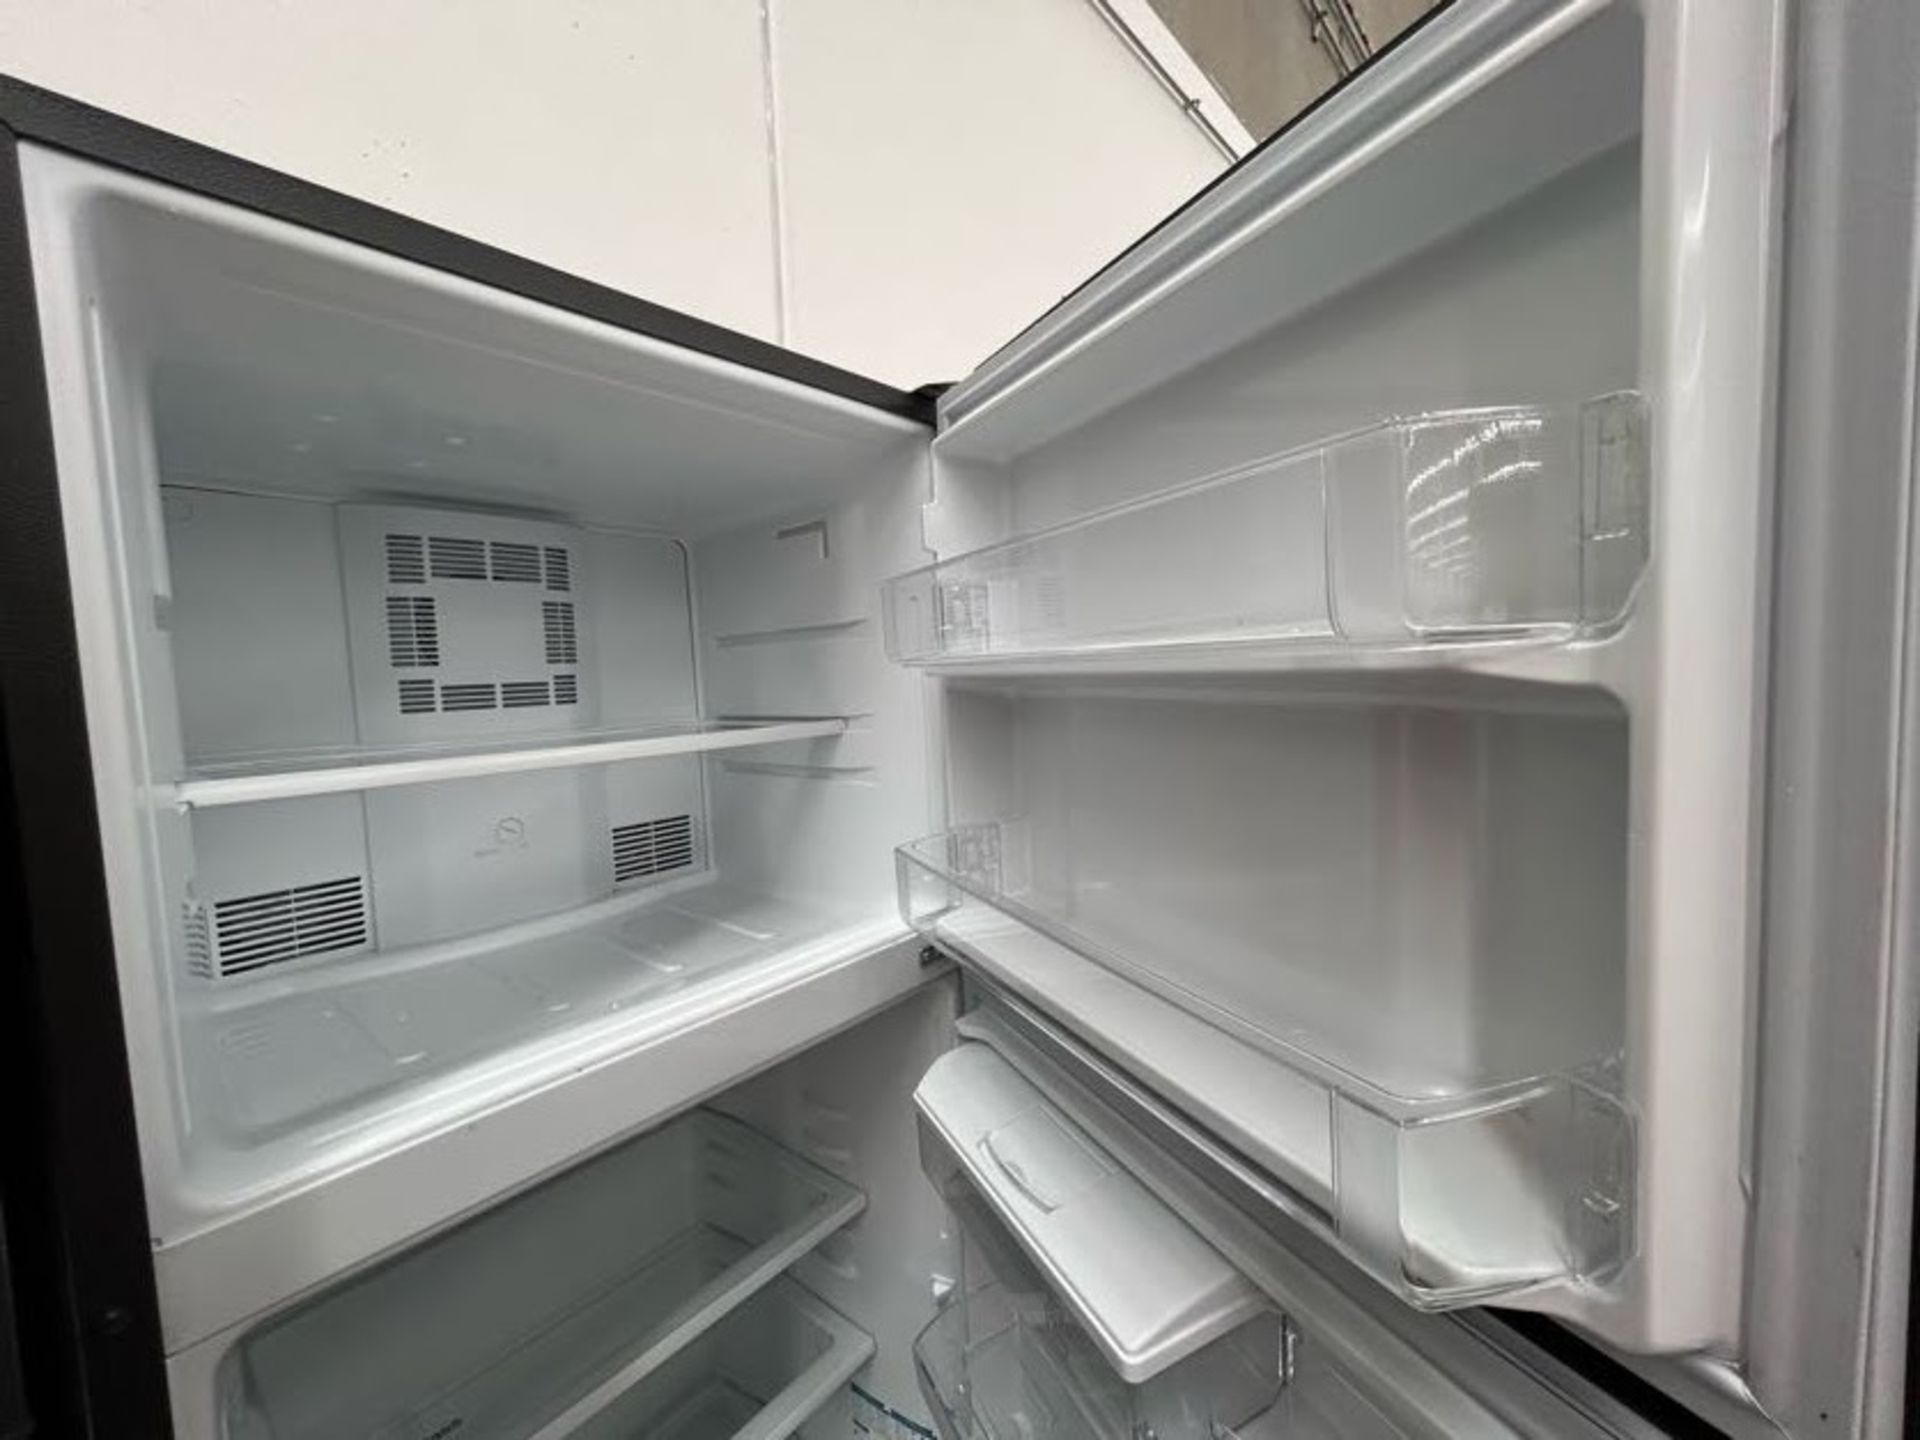 Lote de 2 Refrigeradores contiene: 1 Refrigerador con dispensador de agua Marca MABE, Modelo RME360 - Image 4 of 10